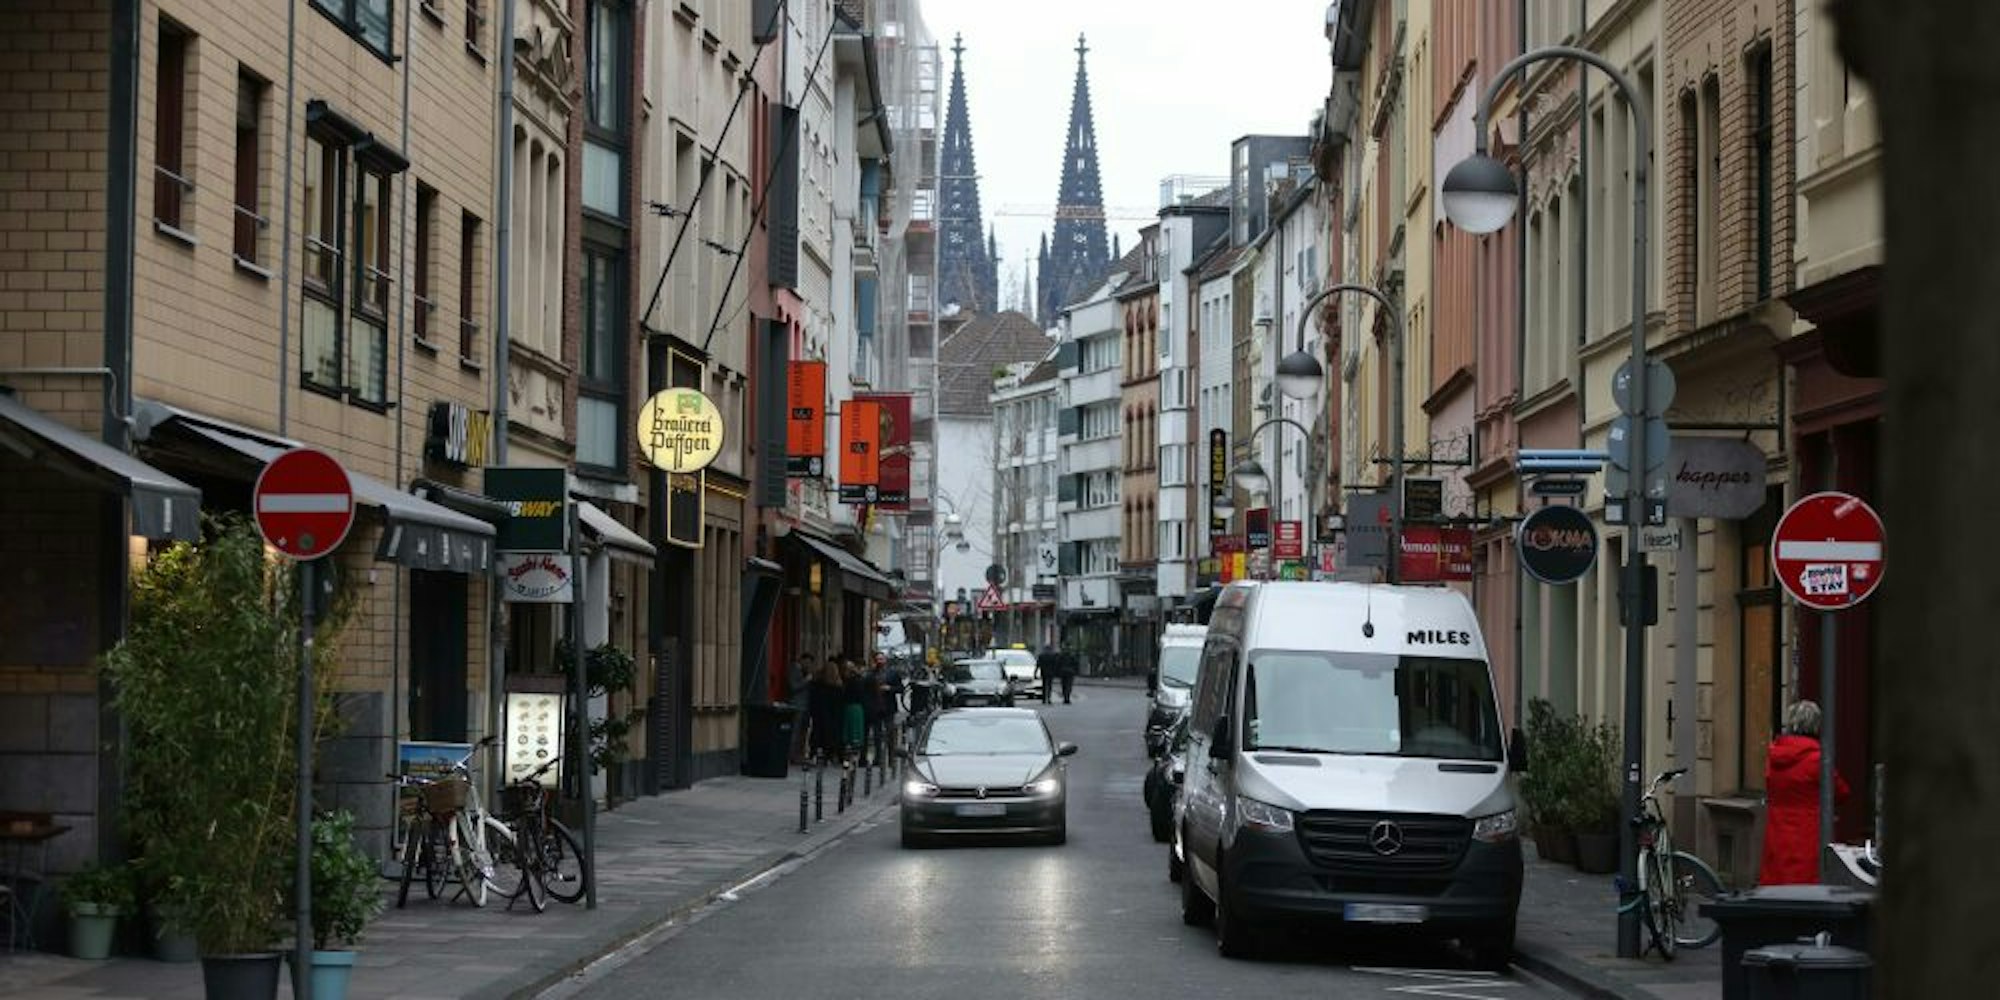 Dieser Teil der Friesenstraße soll Fußgängerzone werden, künftig ist dort nur noch Lieferverkehr am Morgen erlaubt.